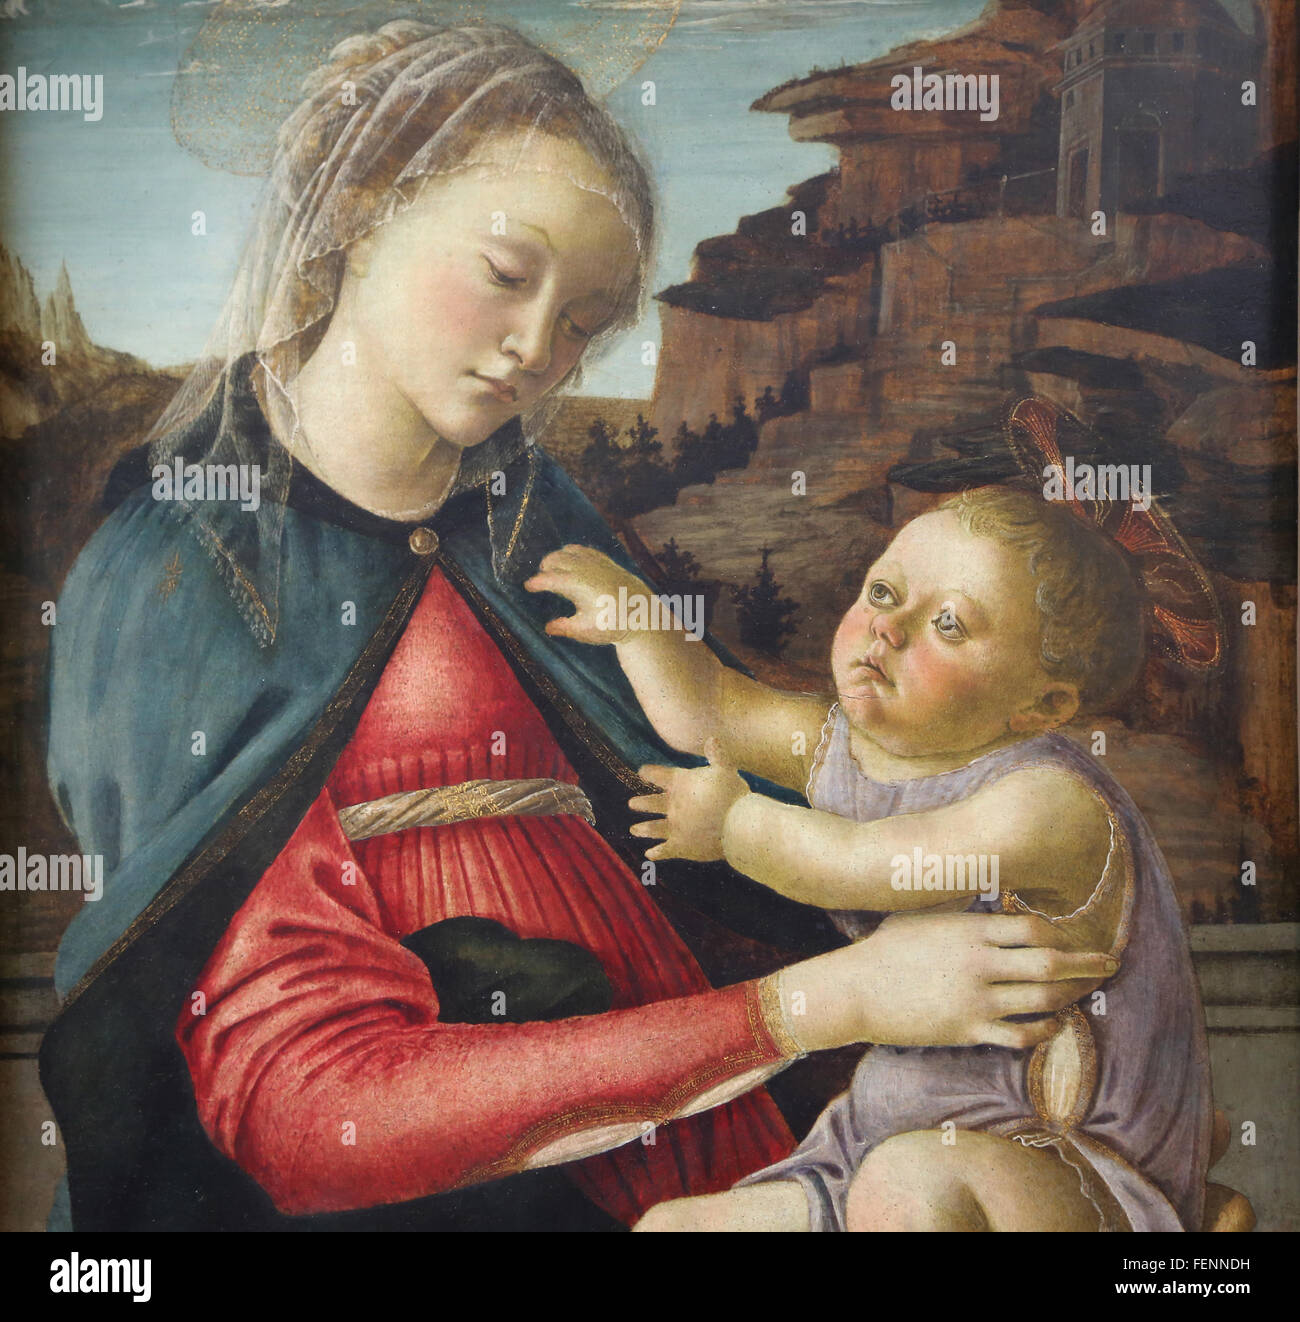 Madonna mit Kind, 1465-1470. Tempera auf Verkleidung. Von Sandro Botticelli (1445-1510). Italienischer Maler. Renaissance. Louvre-Museum. Stockfoto